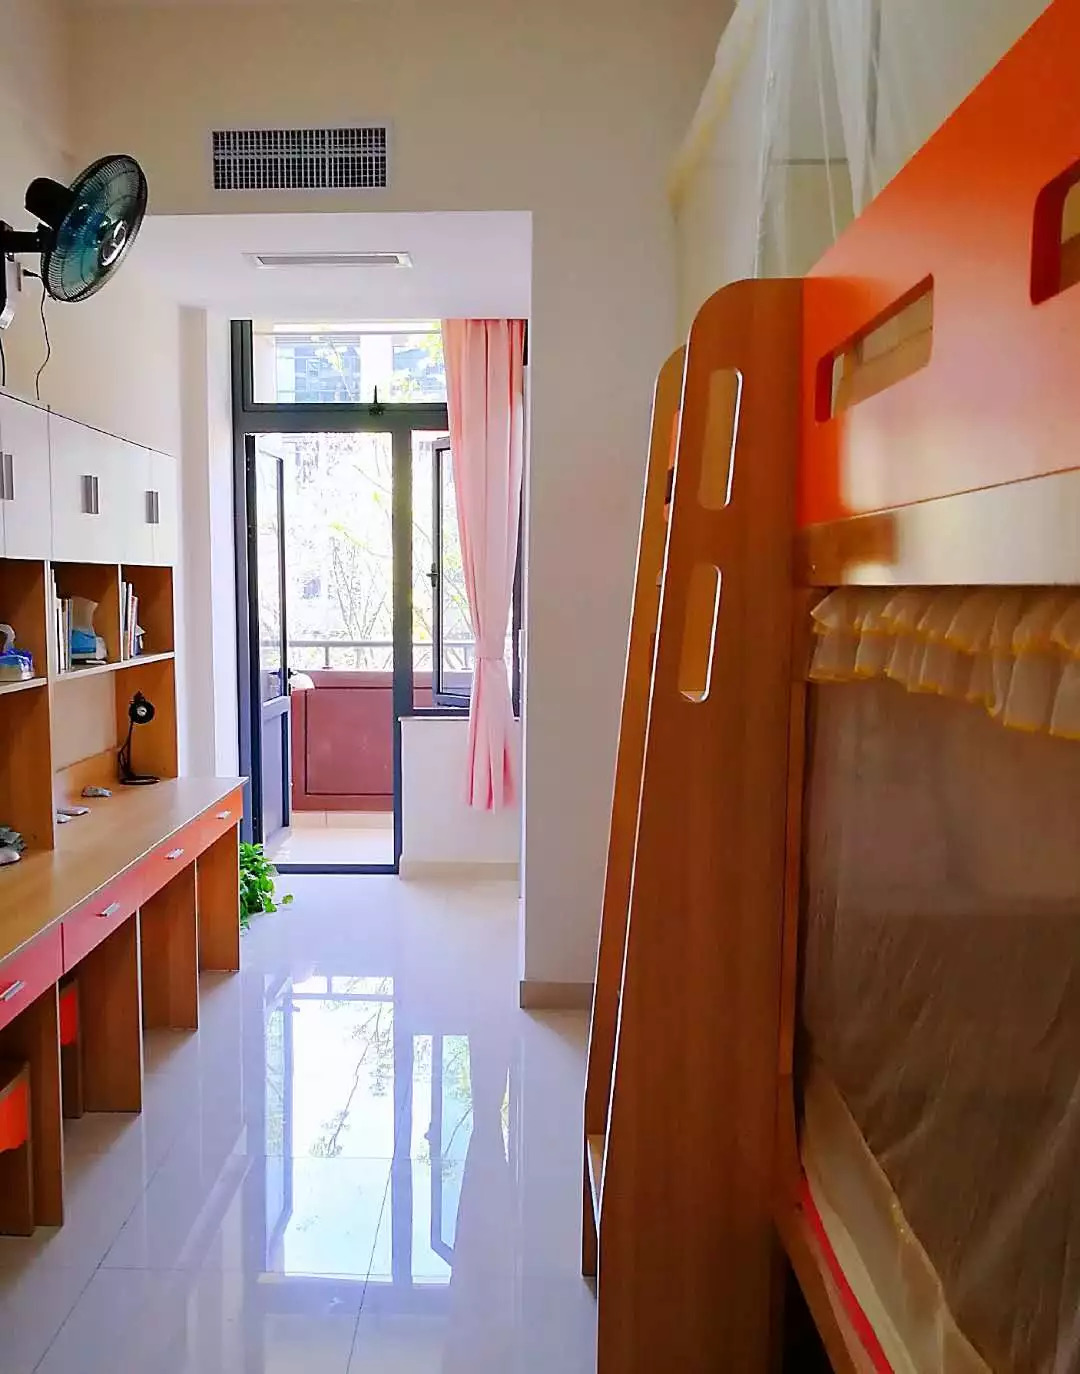 孩子最关心的寝室环境,作为全寄宿制的初中,养正新校区的宿舍不会让